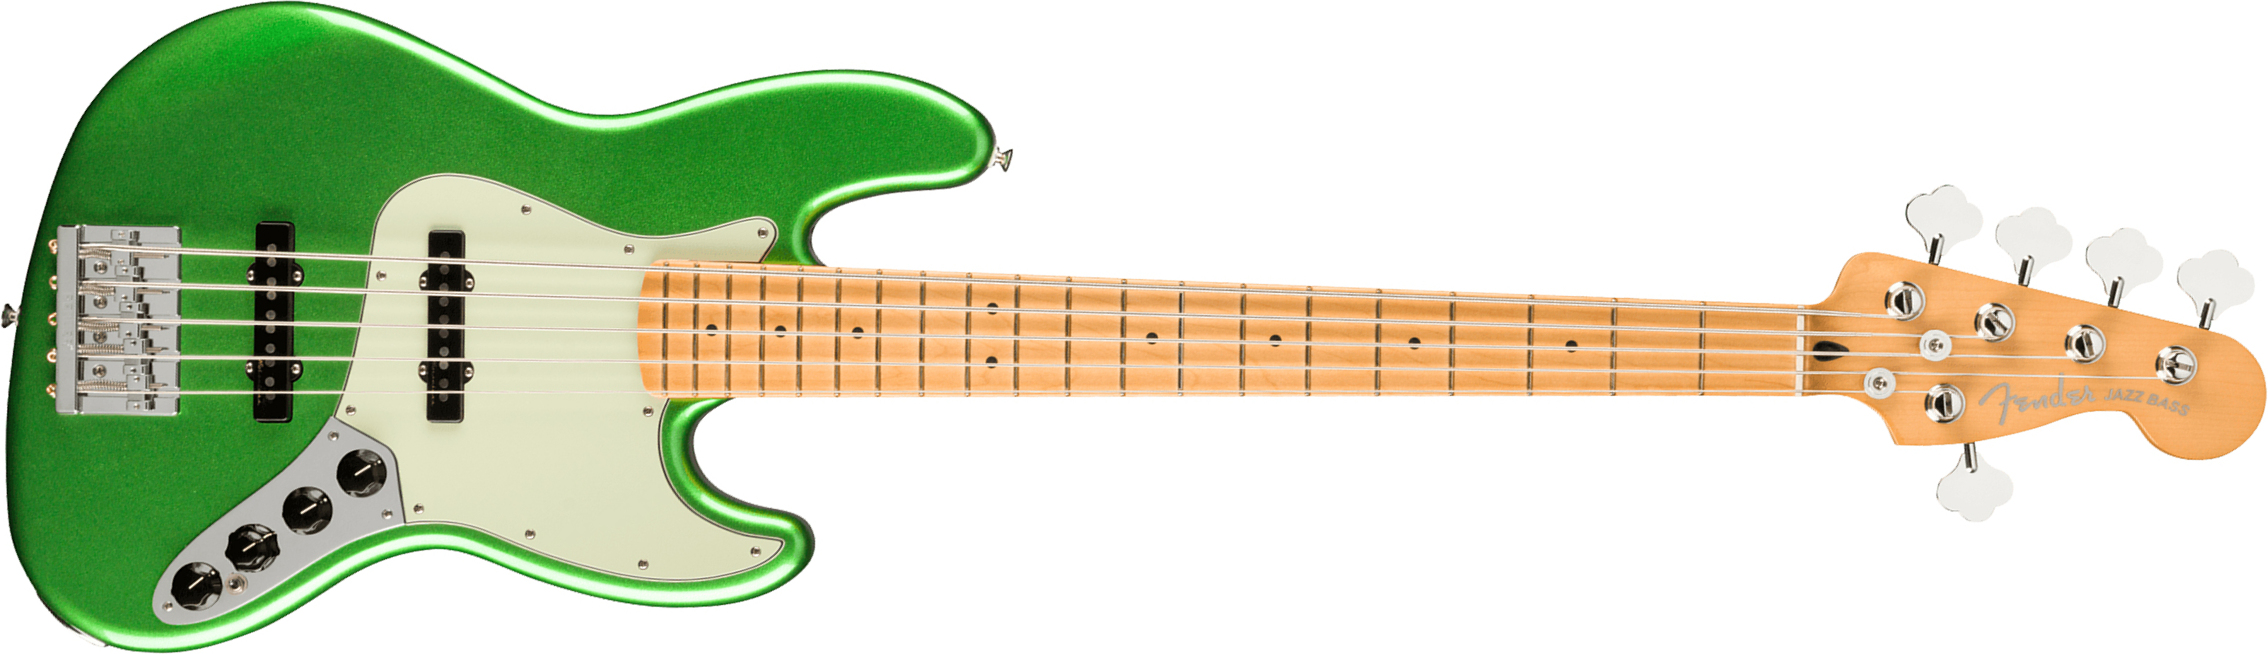 Fender Jazz Bass Player Plus V Mex 5c Active Mn - Cosmic Jade - Bajo eléctrico de cuerpo sólido - Main picture